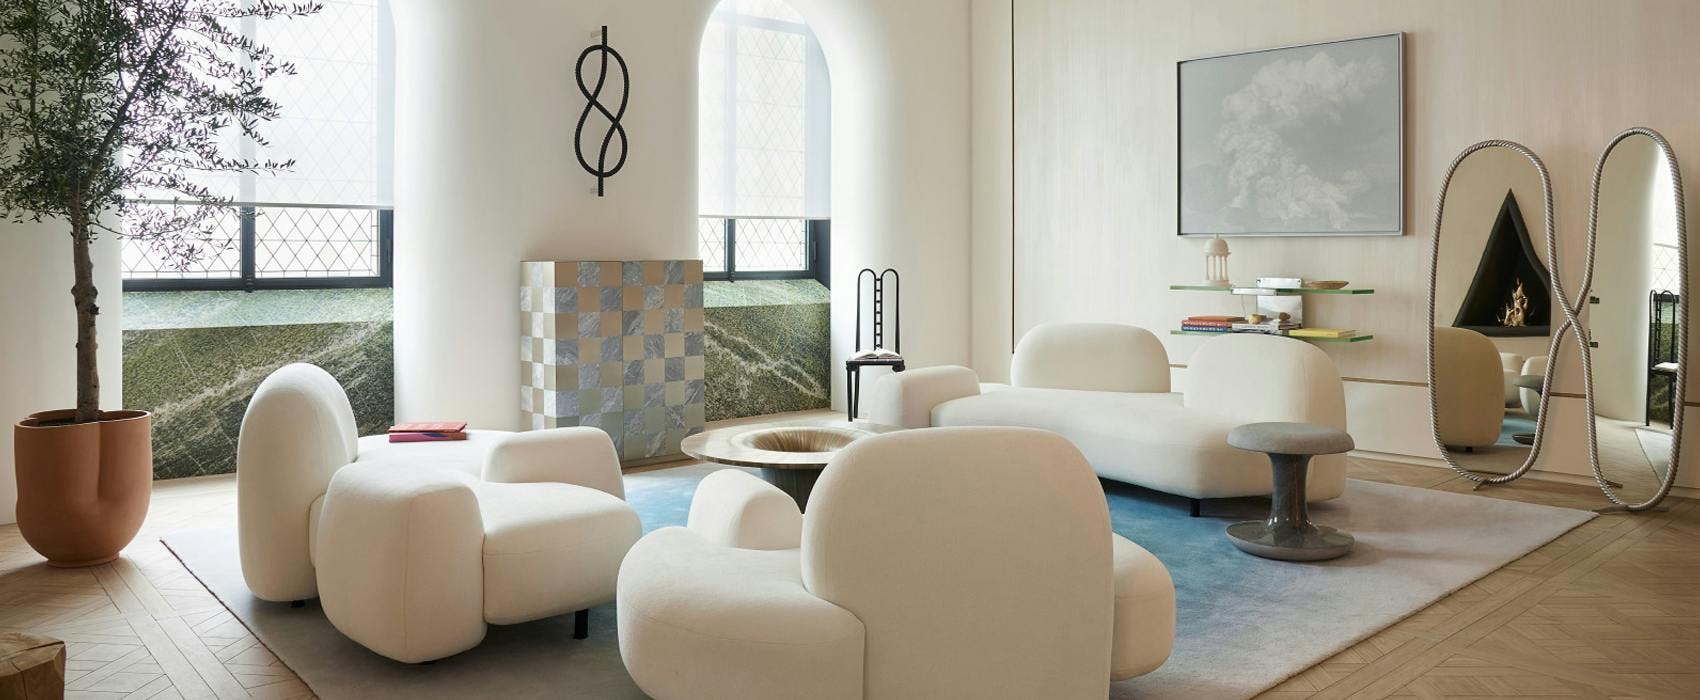 furniture interior design indoors room chair